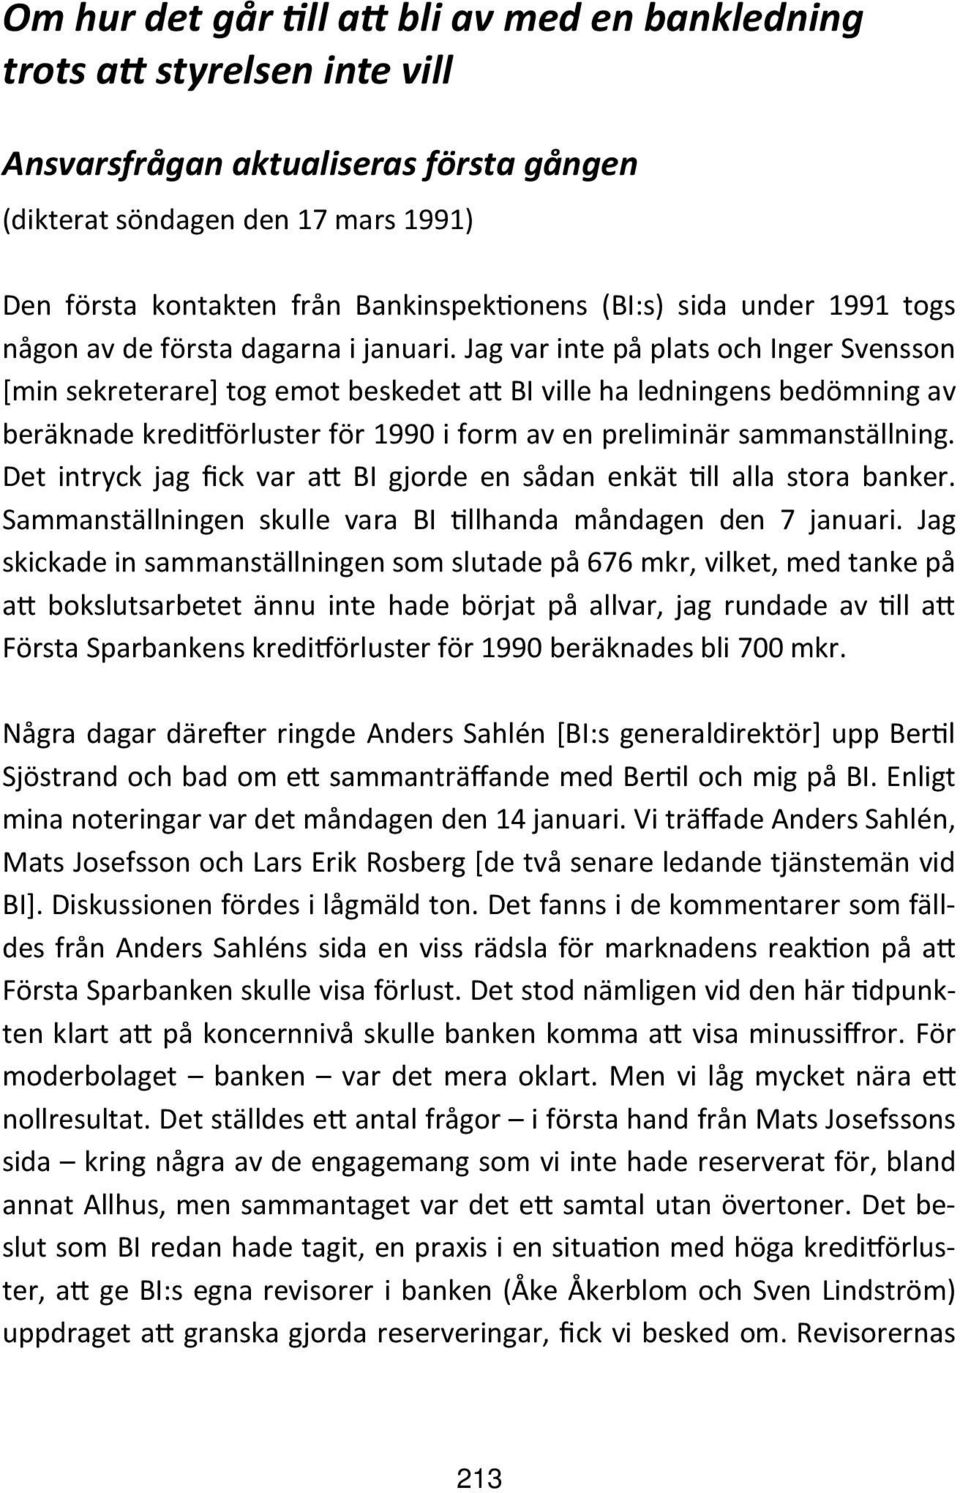 Jag var inte på plats och Inger Svensson [min sekreterare] tog emot beskedet a BI ville ha ledningens bedömning av beräknade kredi örluster för 1990 i form av en preliminär sammanställning.